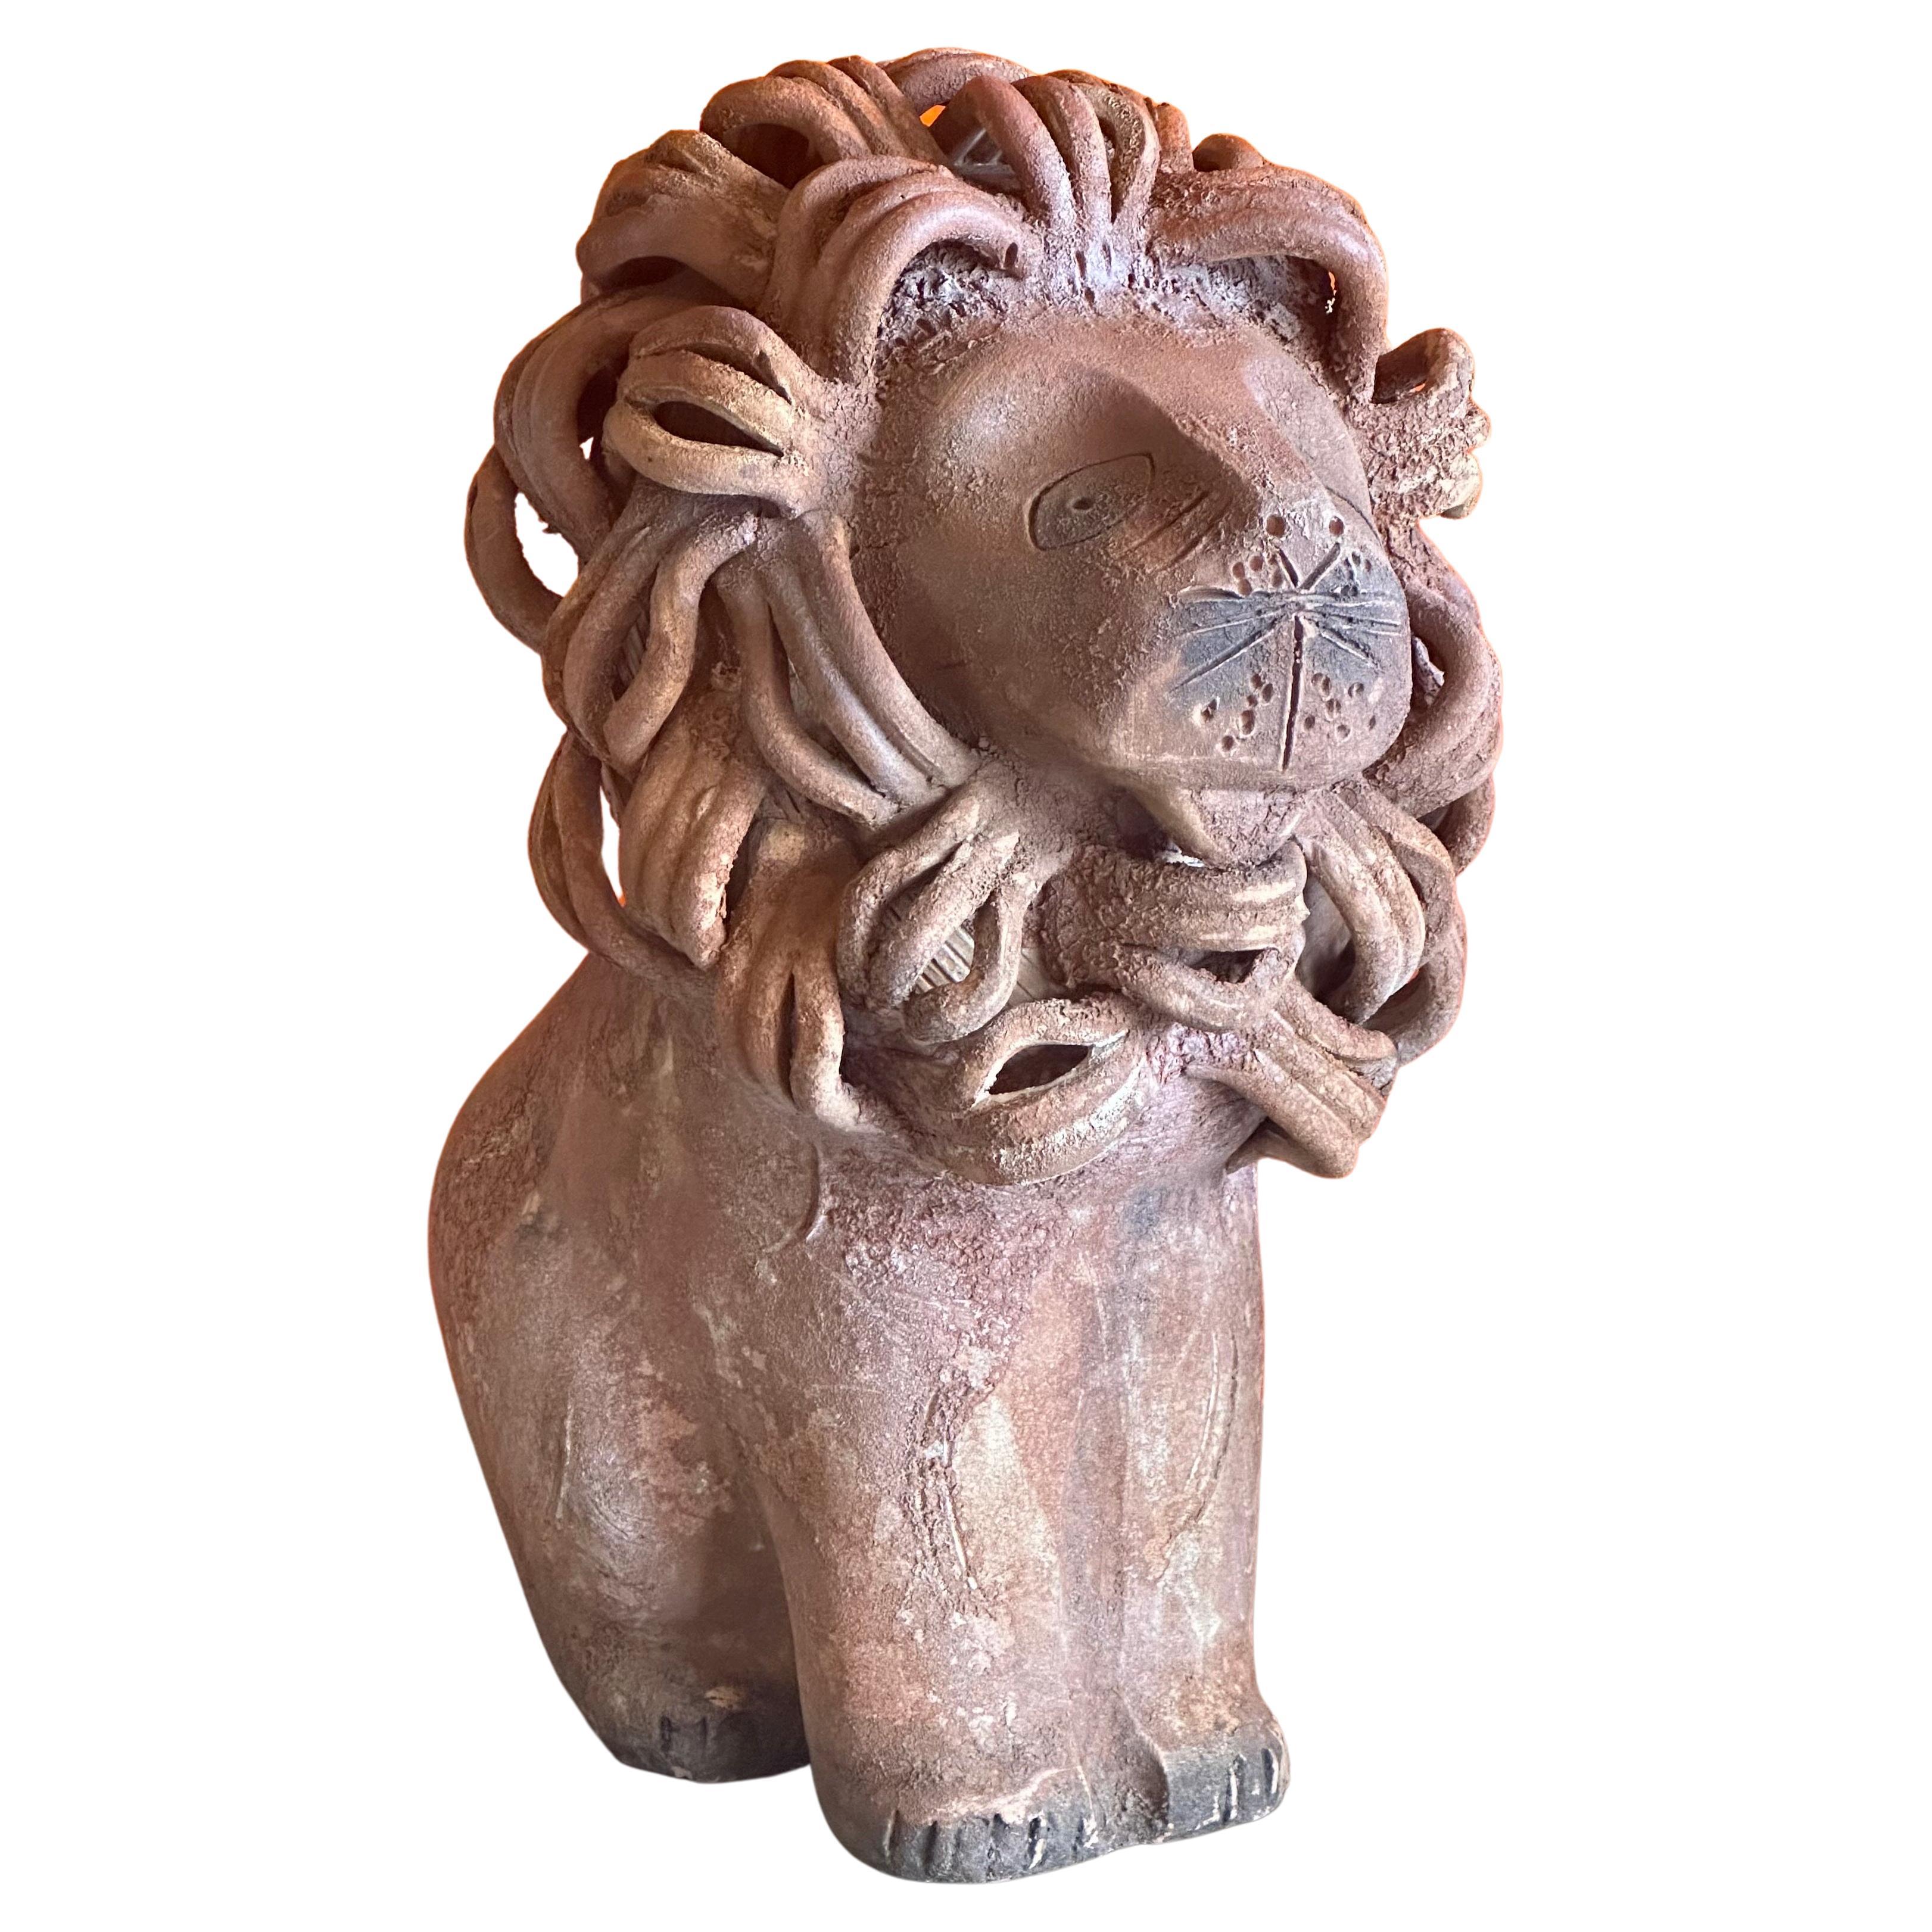 Magnifique sculpture de lion en céramique d'Aldo Londi pour Bitossi Raymor, vers les années 1960. La pièce est en très bon état et présente une finition et une texture brunes et rustiques, semblables à celles de la terra cota.  La sculpture présente